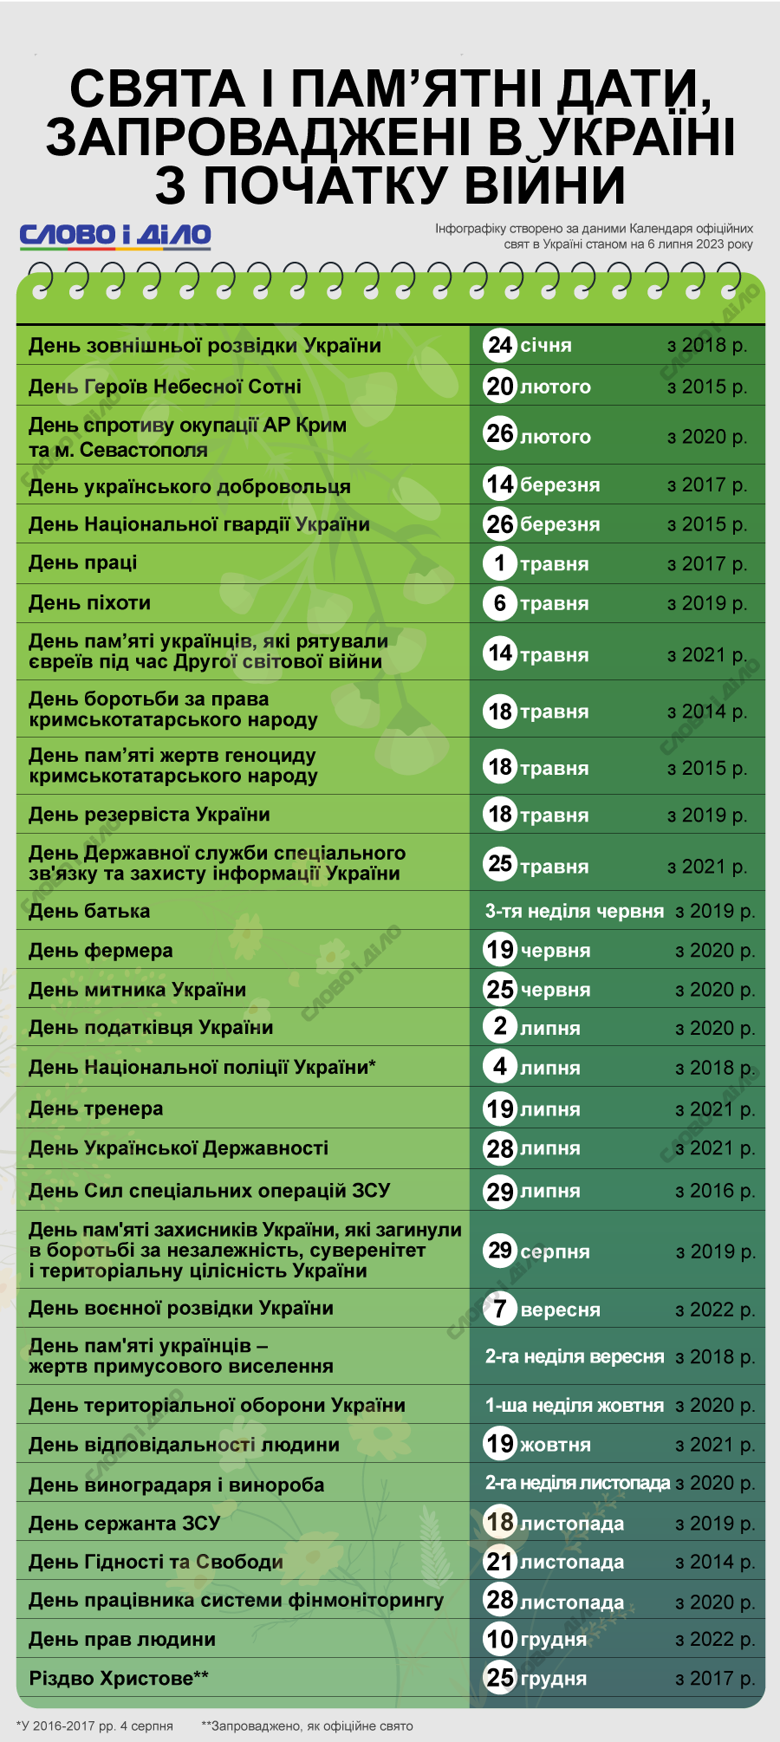 Какие новые праздники появились в Украине за время войны за россией, какие праздники перенесли на другие даты – на инфографике.